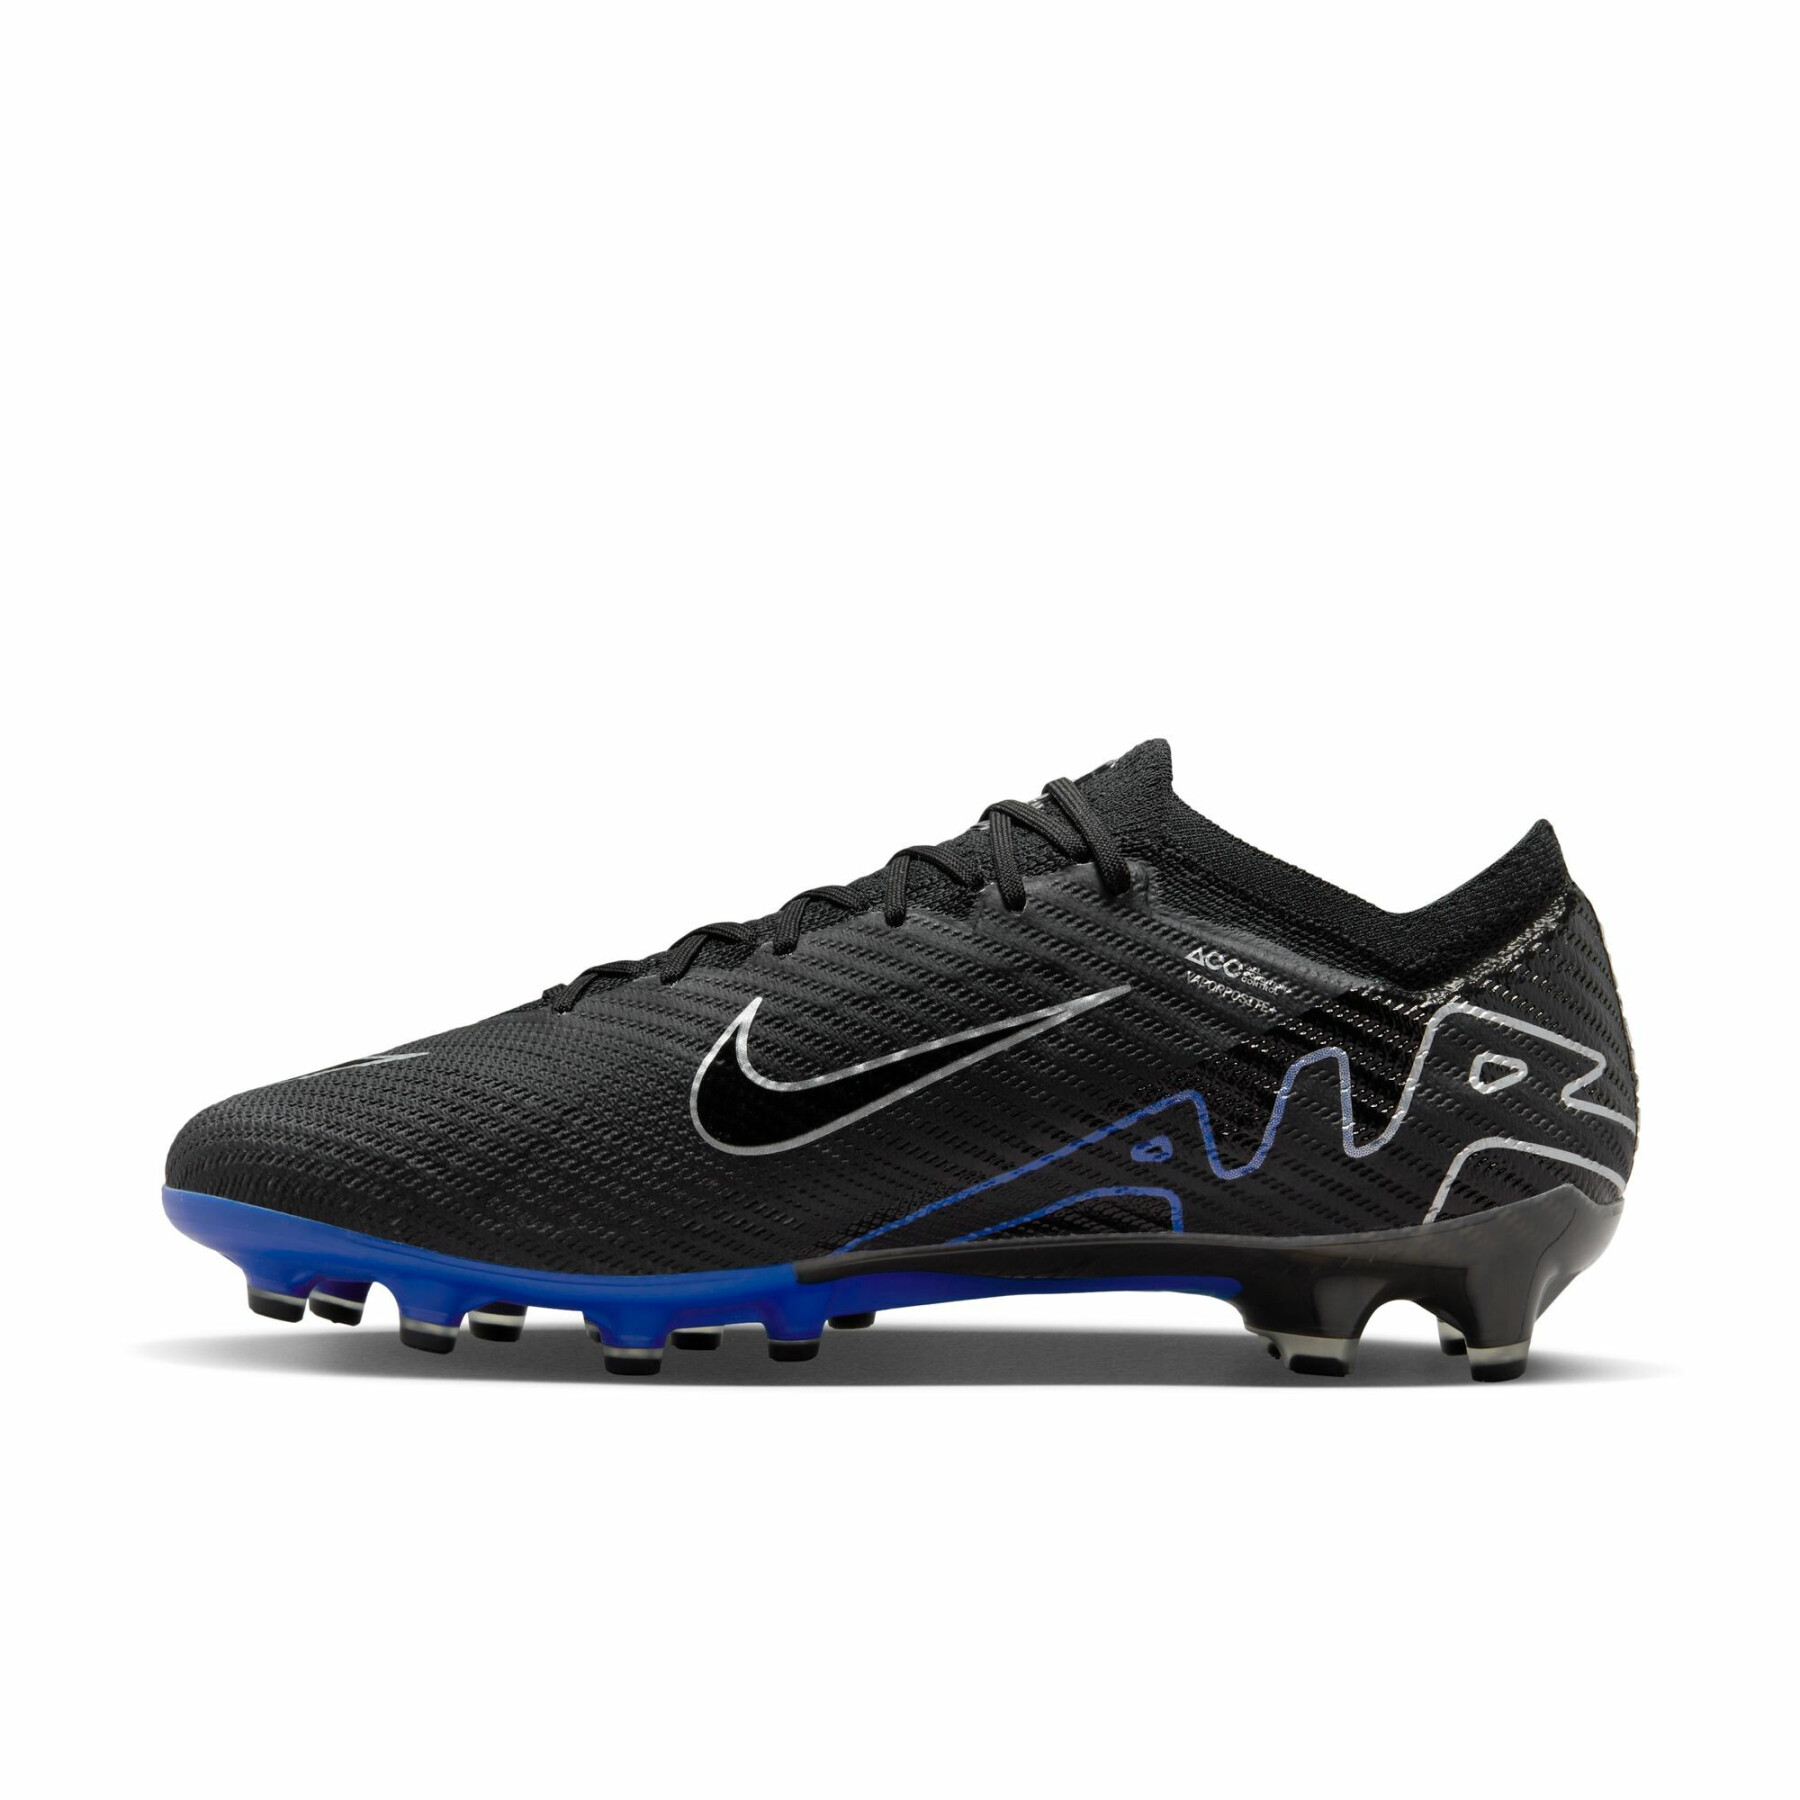 Soccer shoes Nike Mercurial Vapor 15 Elite AG